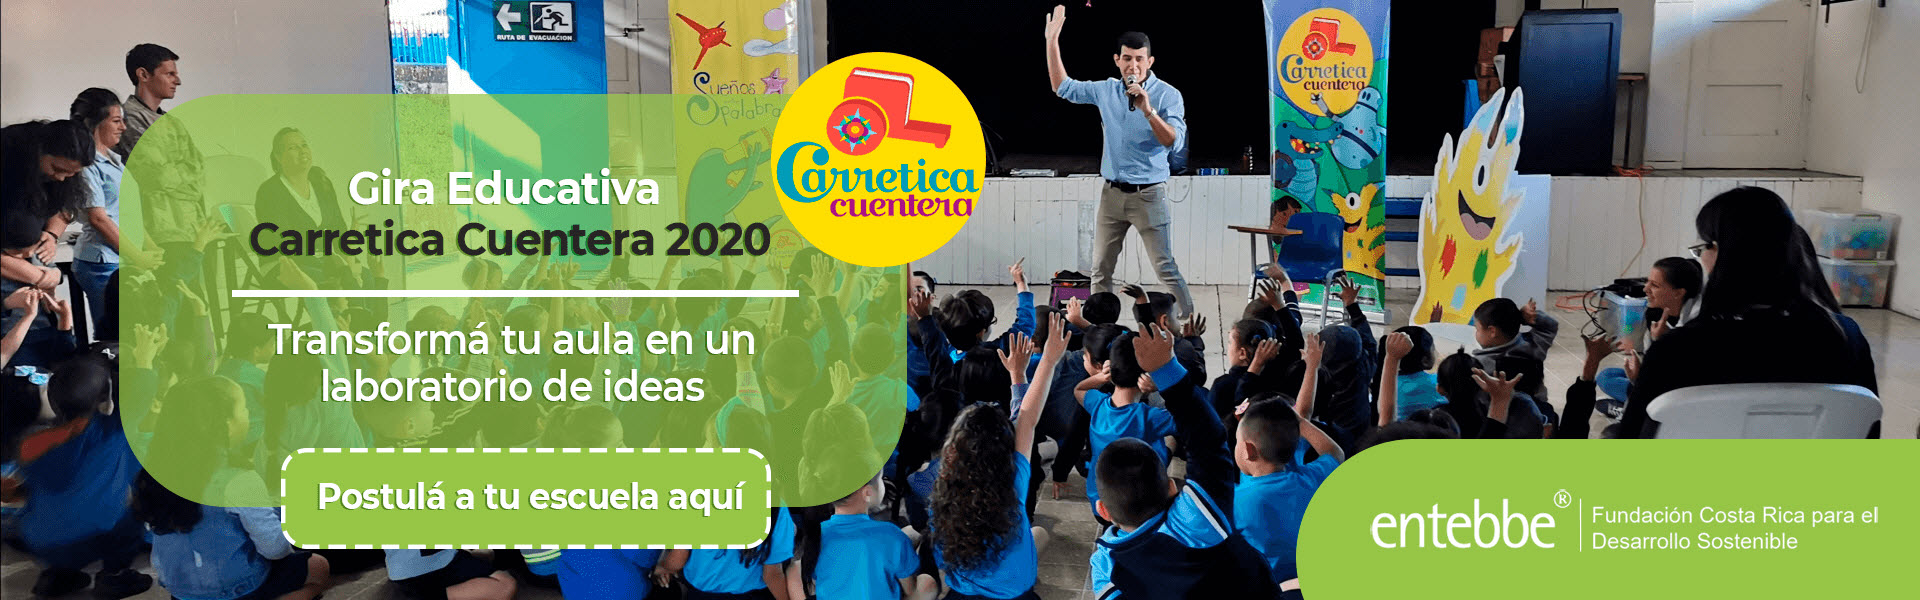 Gira educativa Carretica Cuentera 2020